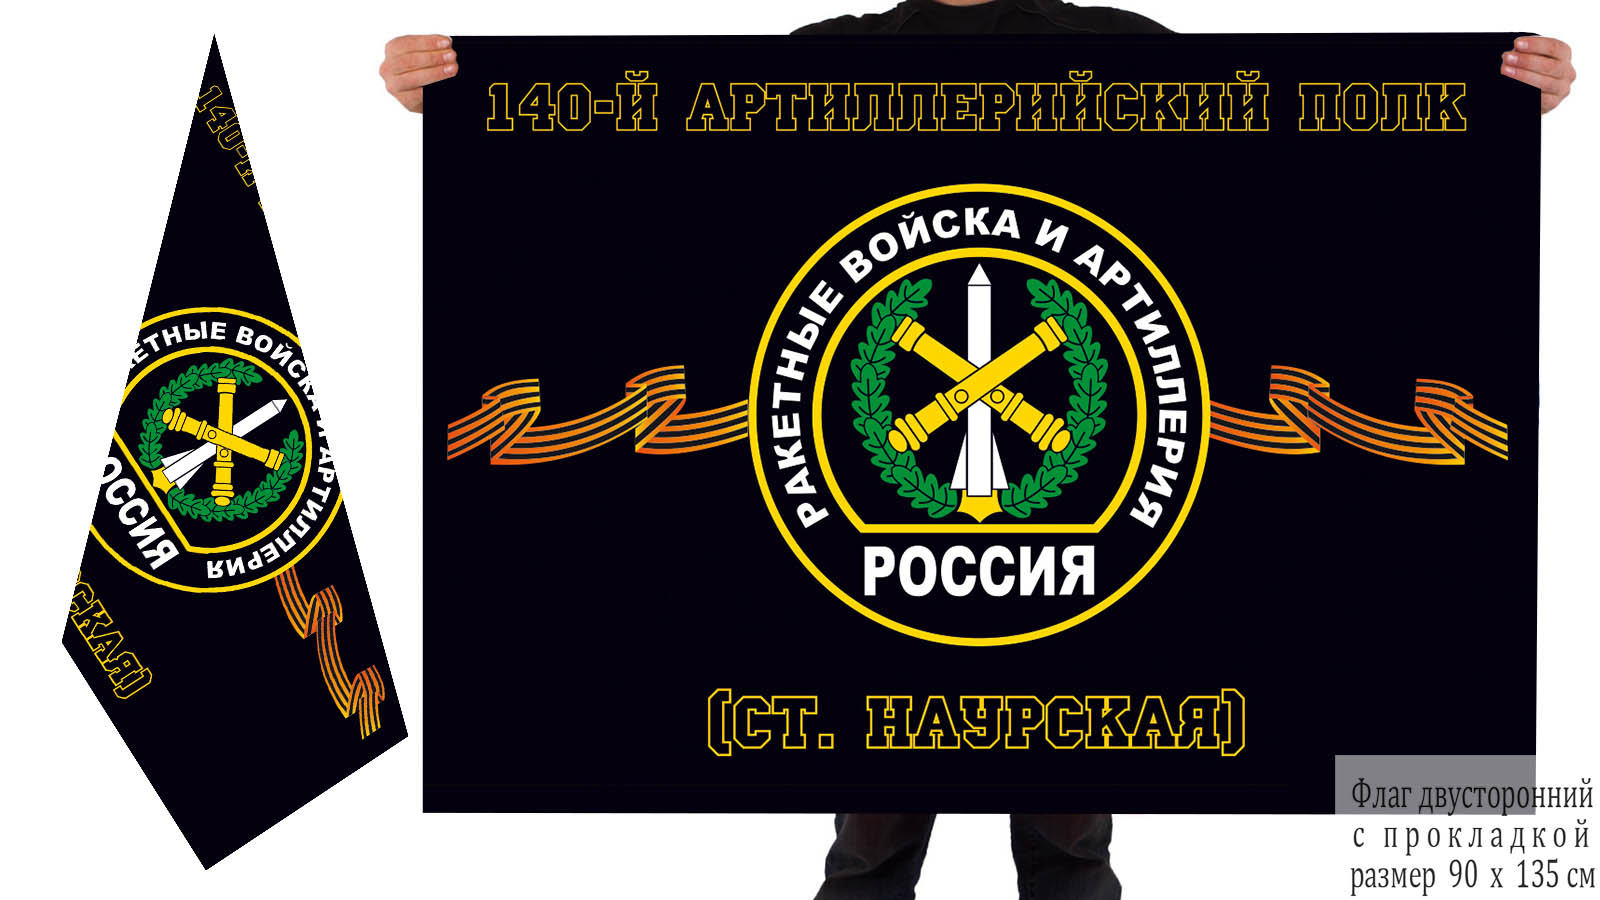 Двусторонний флаг РВиА 140 артиллерийского полка